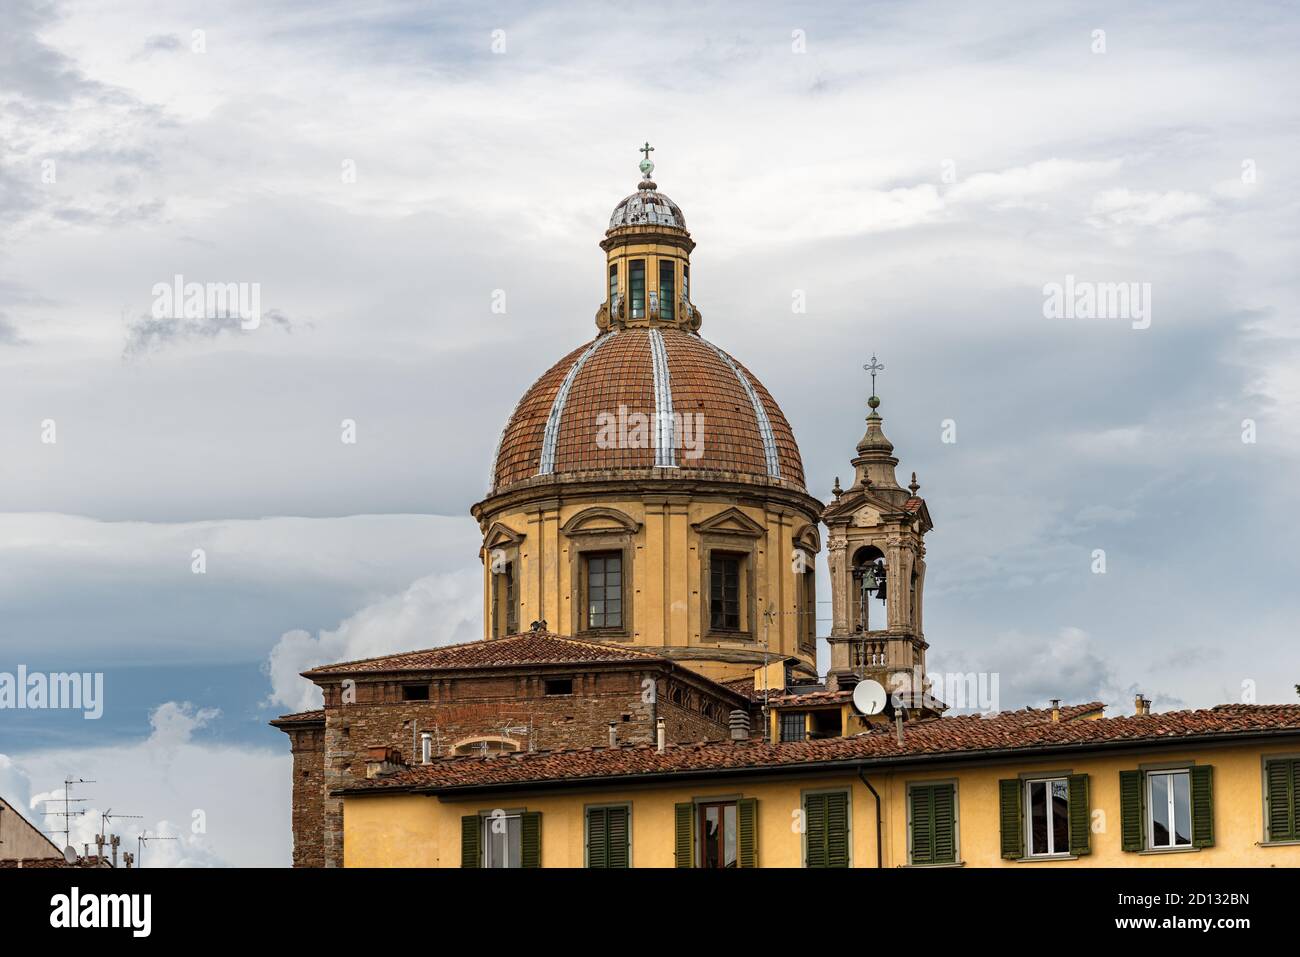 Eglise de San Frediano à Cestello (1450-XX siècle) dans le style baroque, quartier Oltrarno, Florence, site classé au patrimoine mondial de l'UNESCO, Toscane, Italie. Banque D'Images